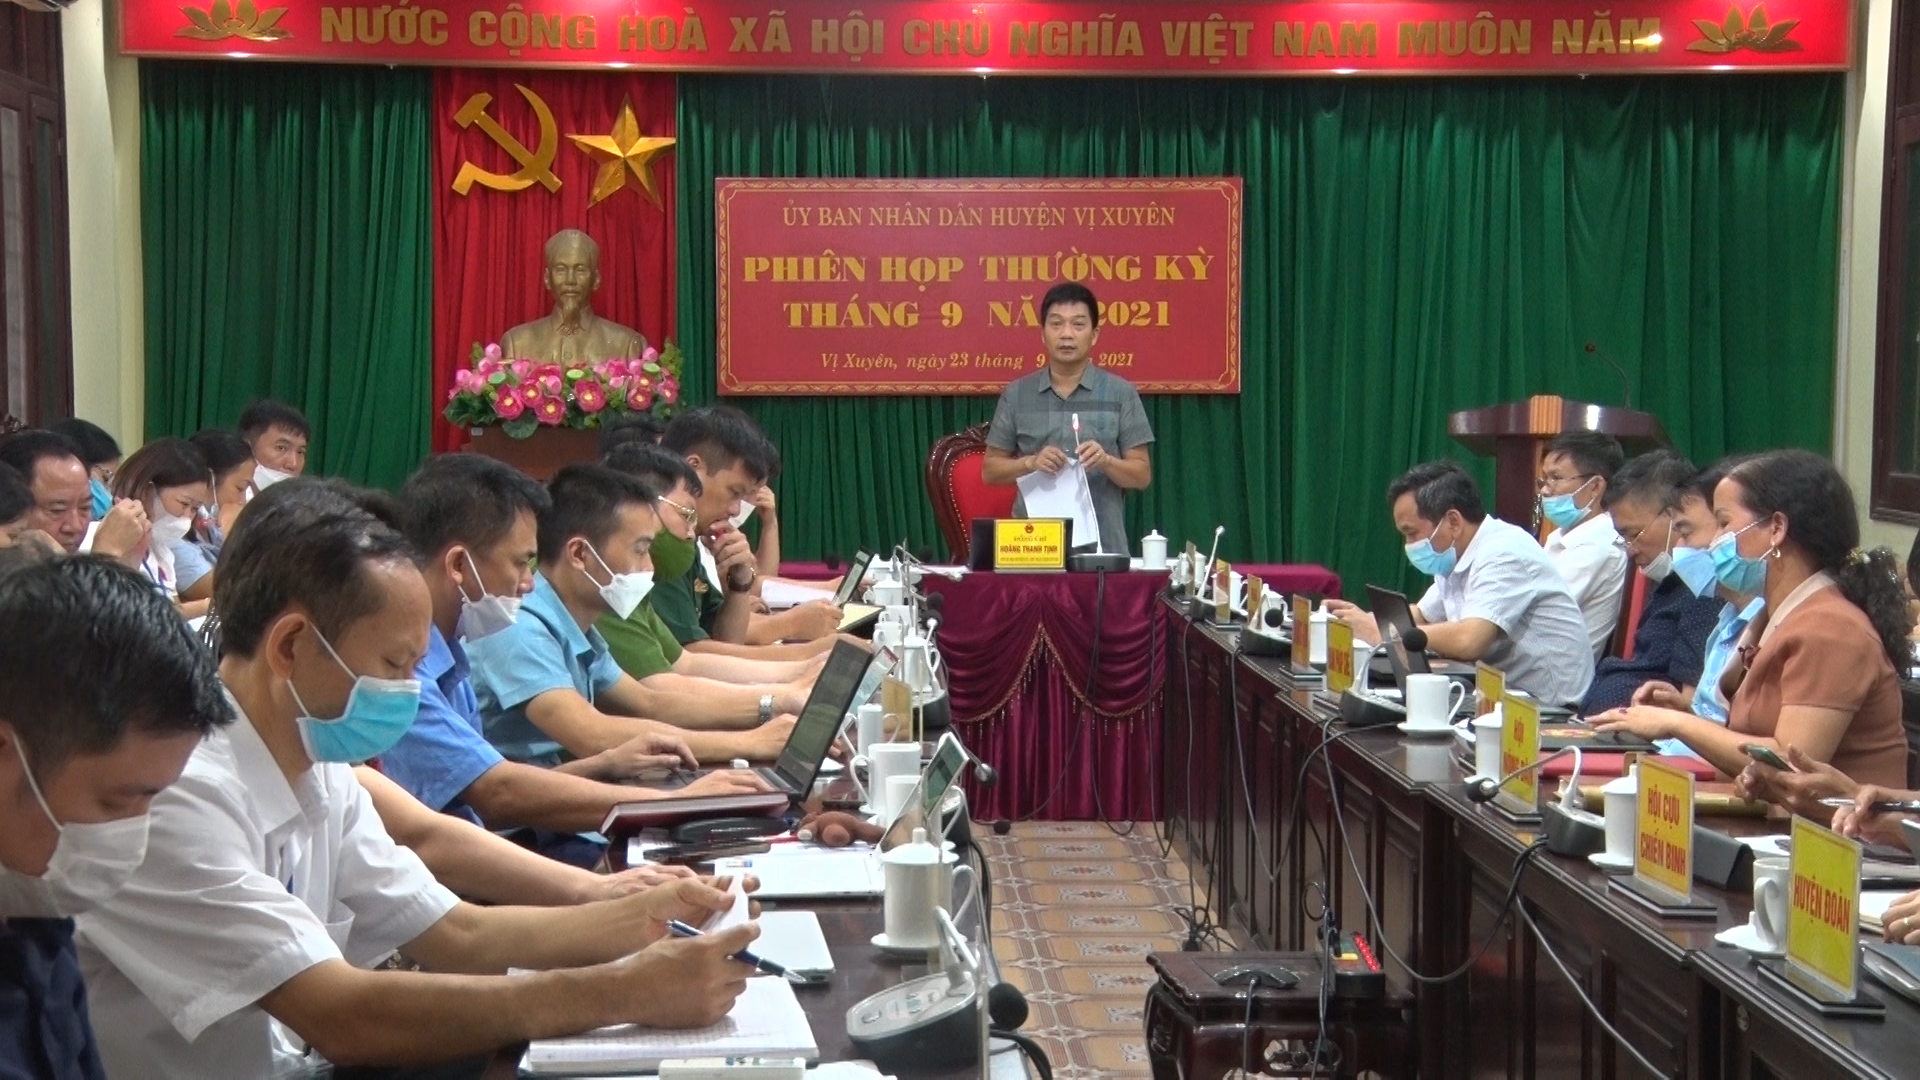 Phiên họp UBND huyện Vị Xuyên tháng 9 năm 2021